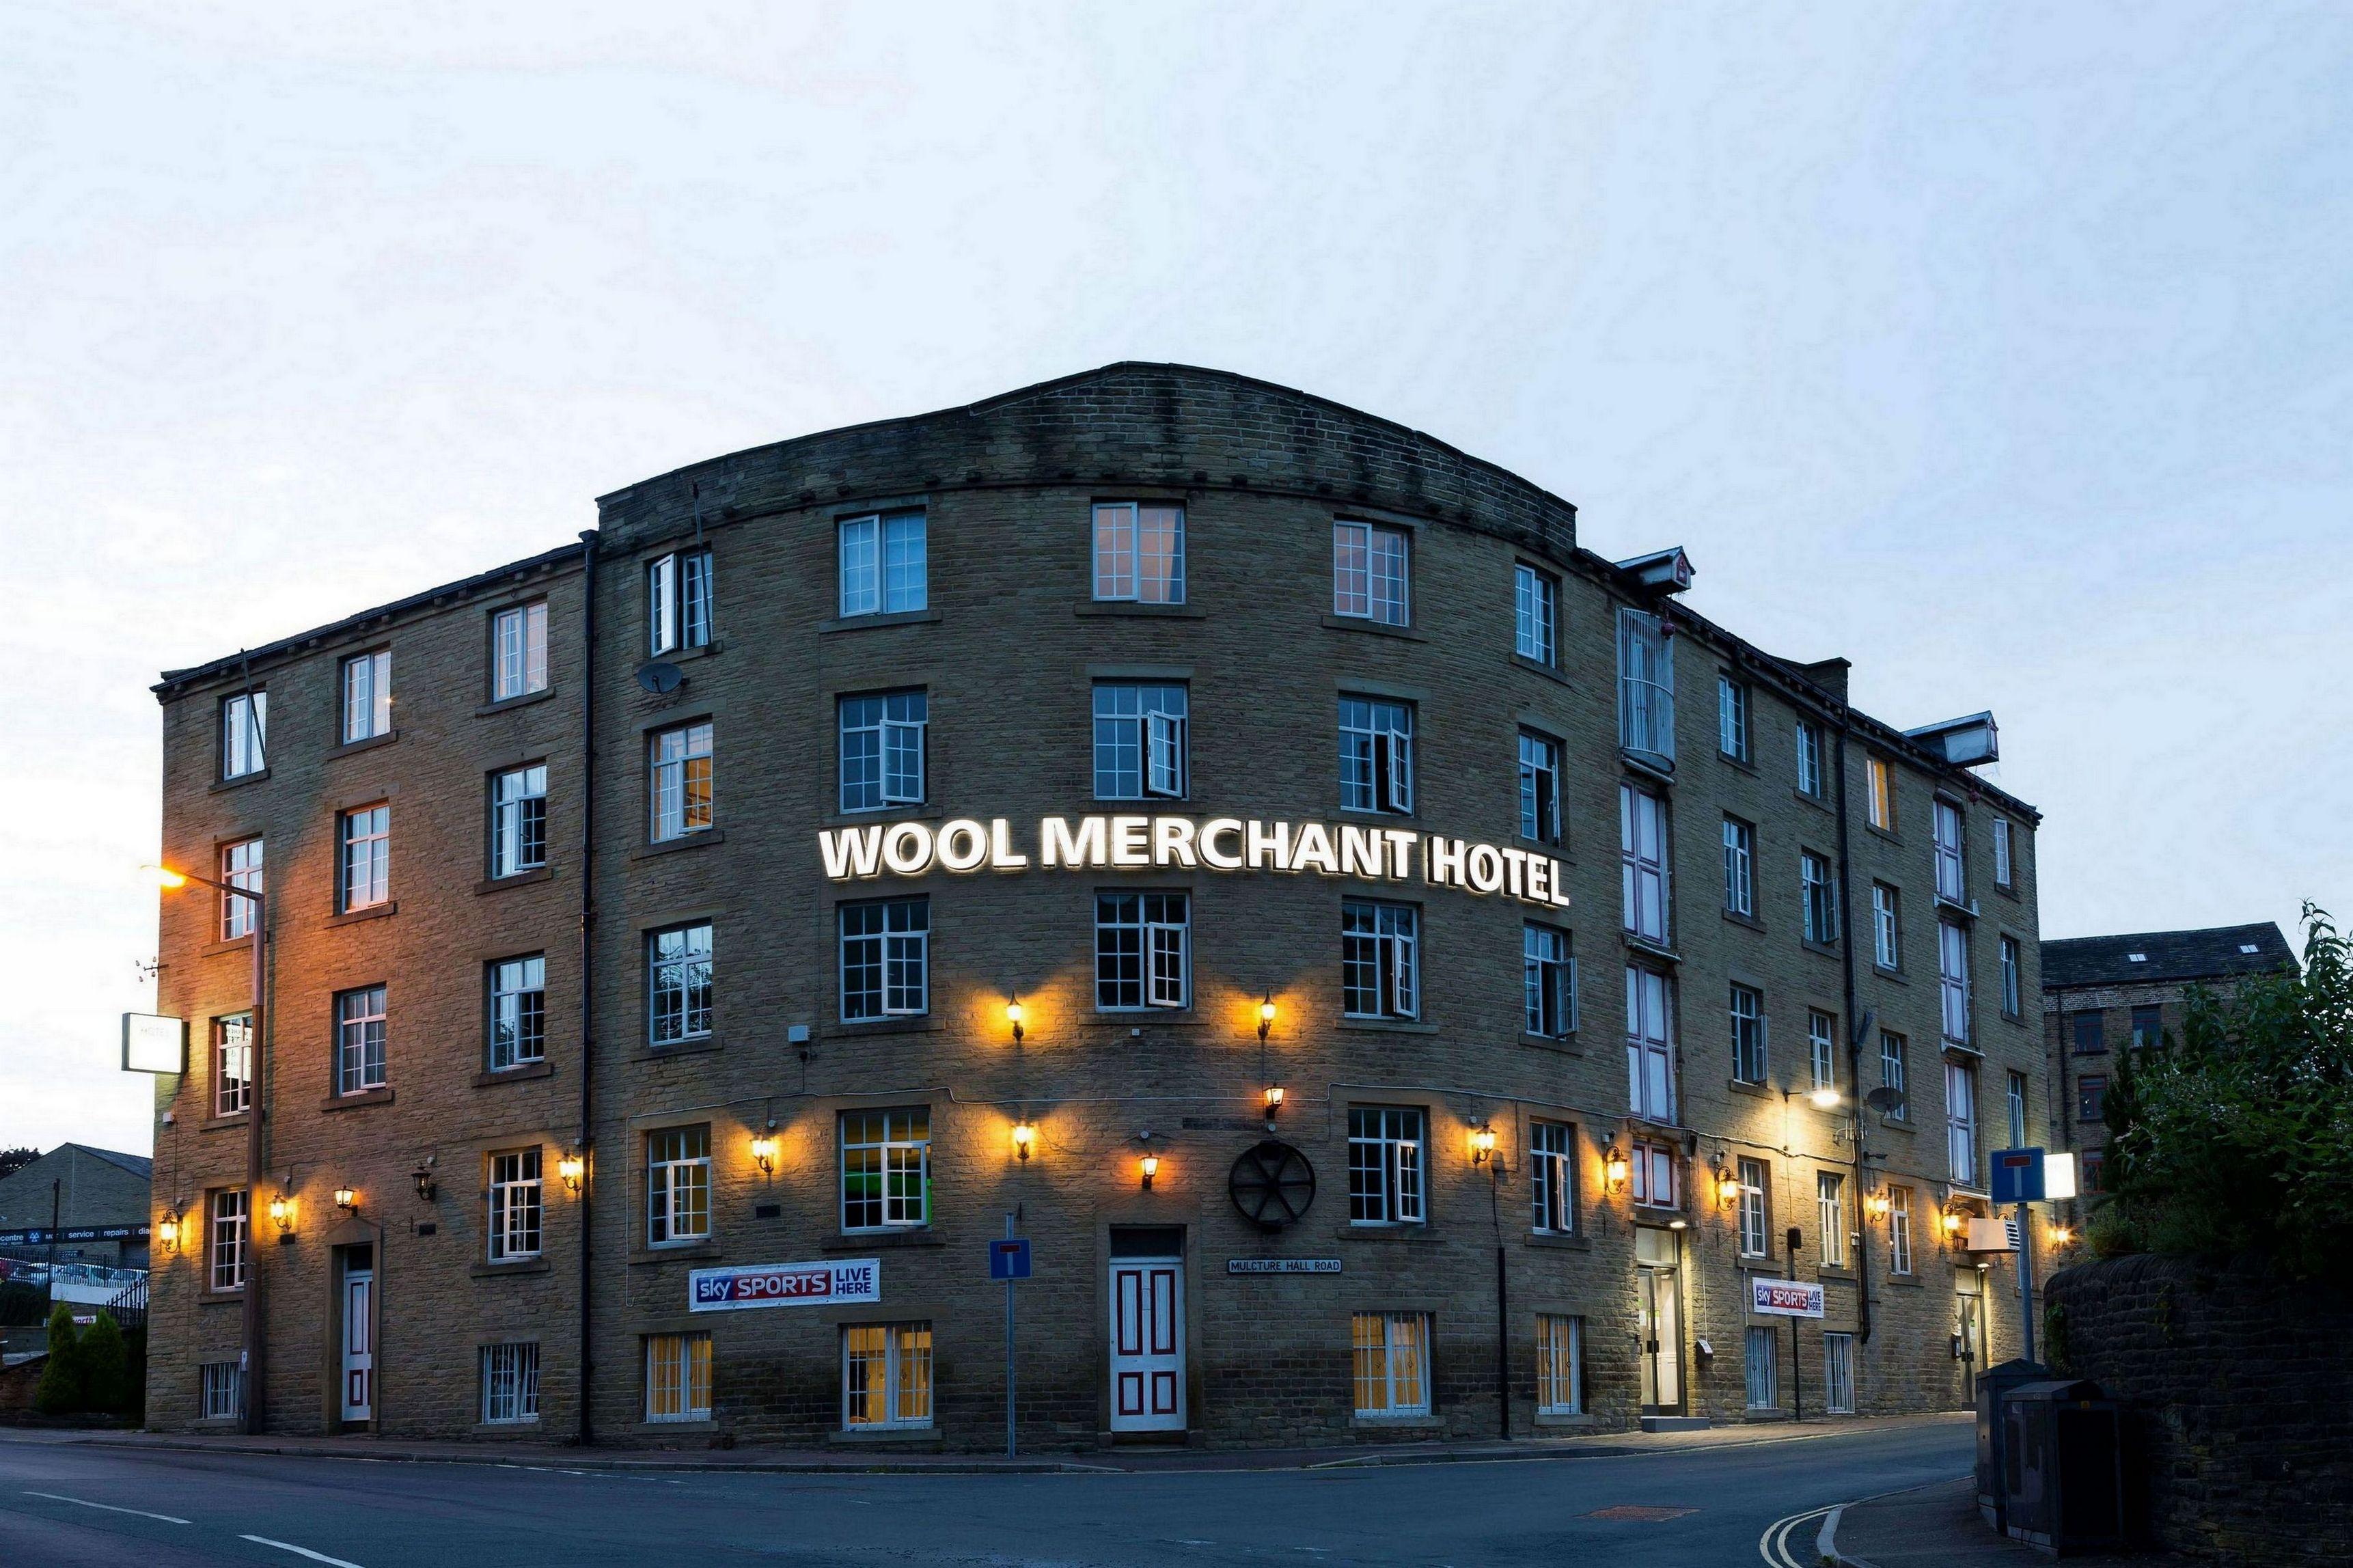 Wool Merchant Hotel in Halifax, United Kingdom